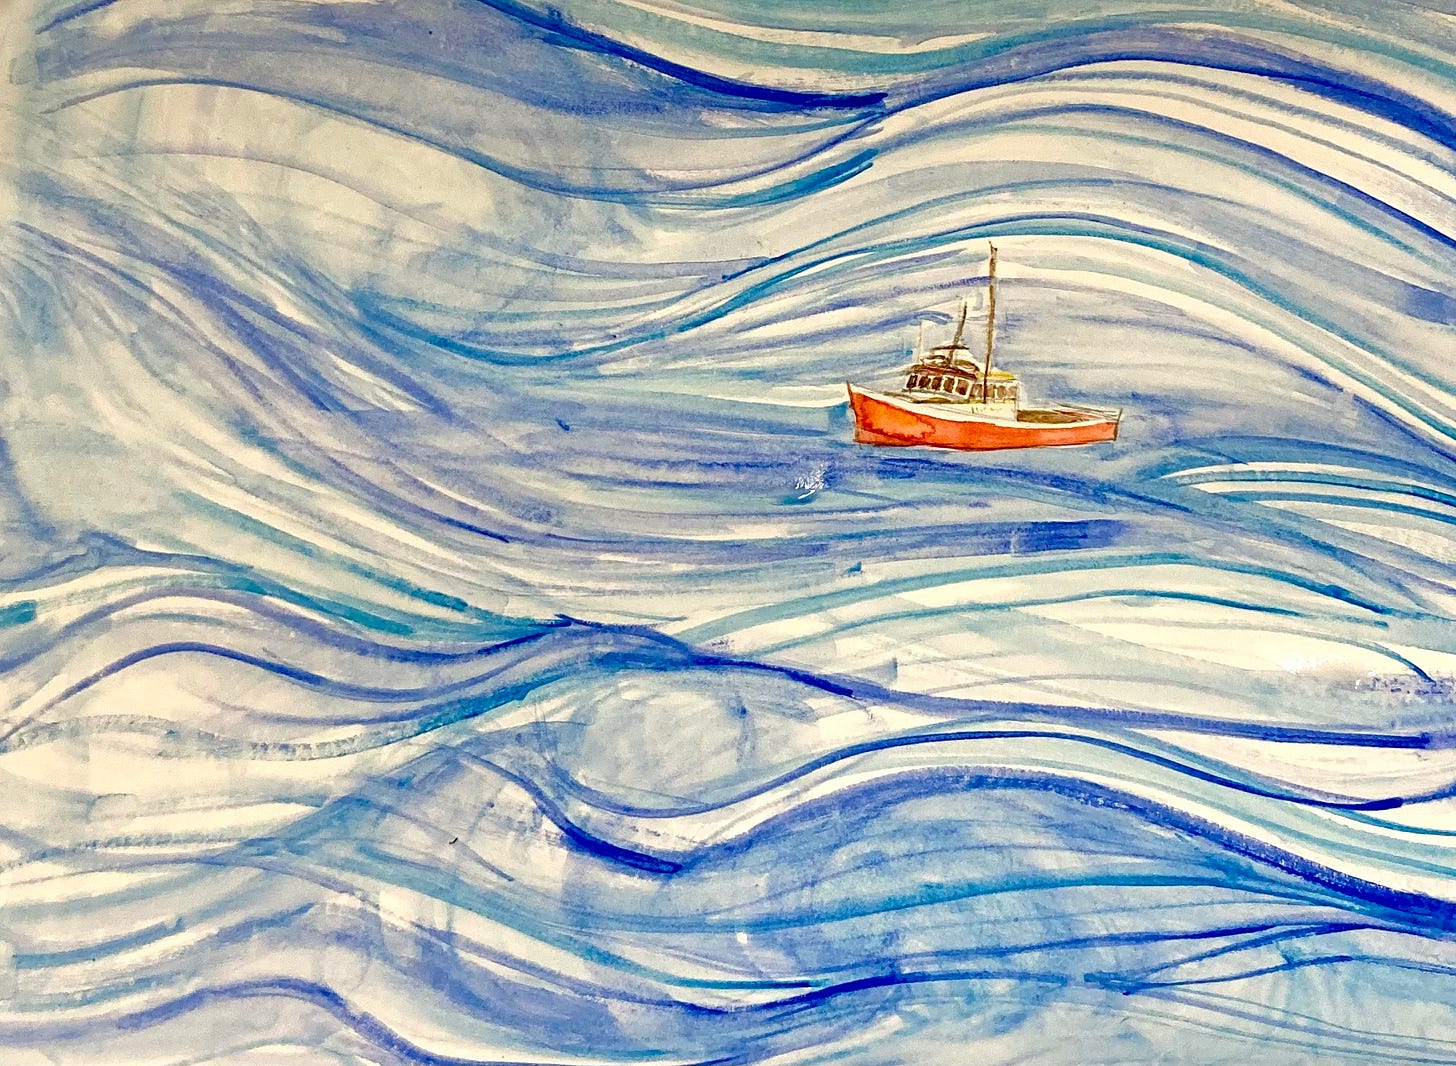 A watercolor sketch of an orange lobster boat in blue swirls of water.